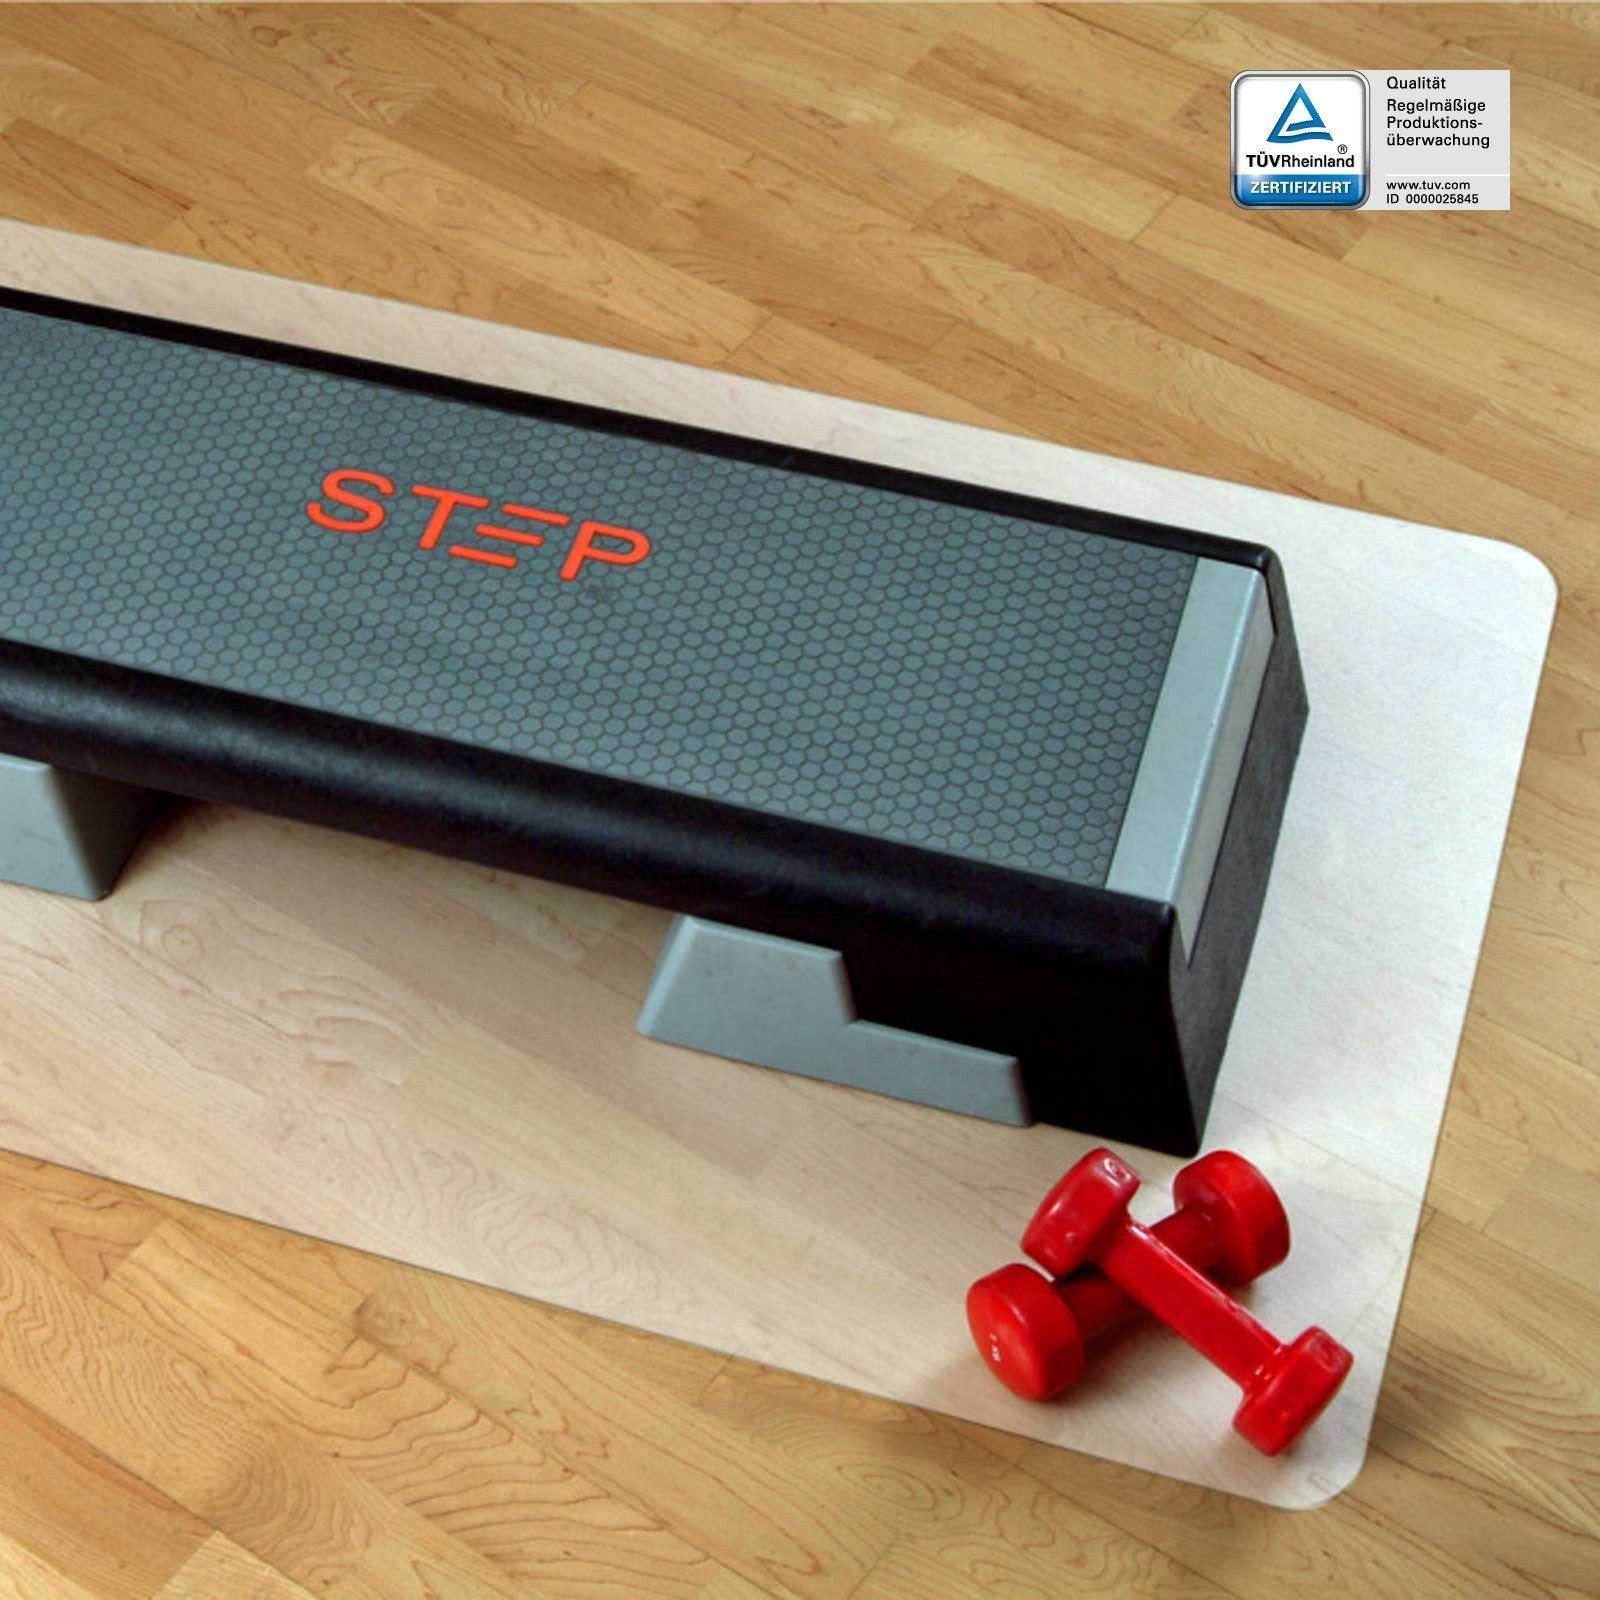 Karat Bodenmatte Unterlegmatte für Fitnessgeräte, Bodenschutz